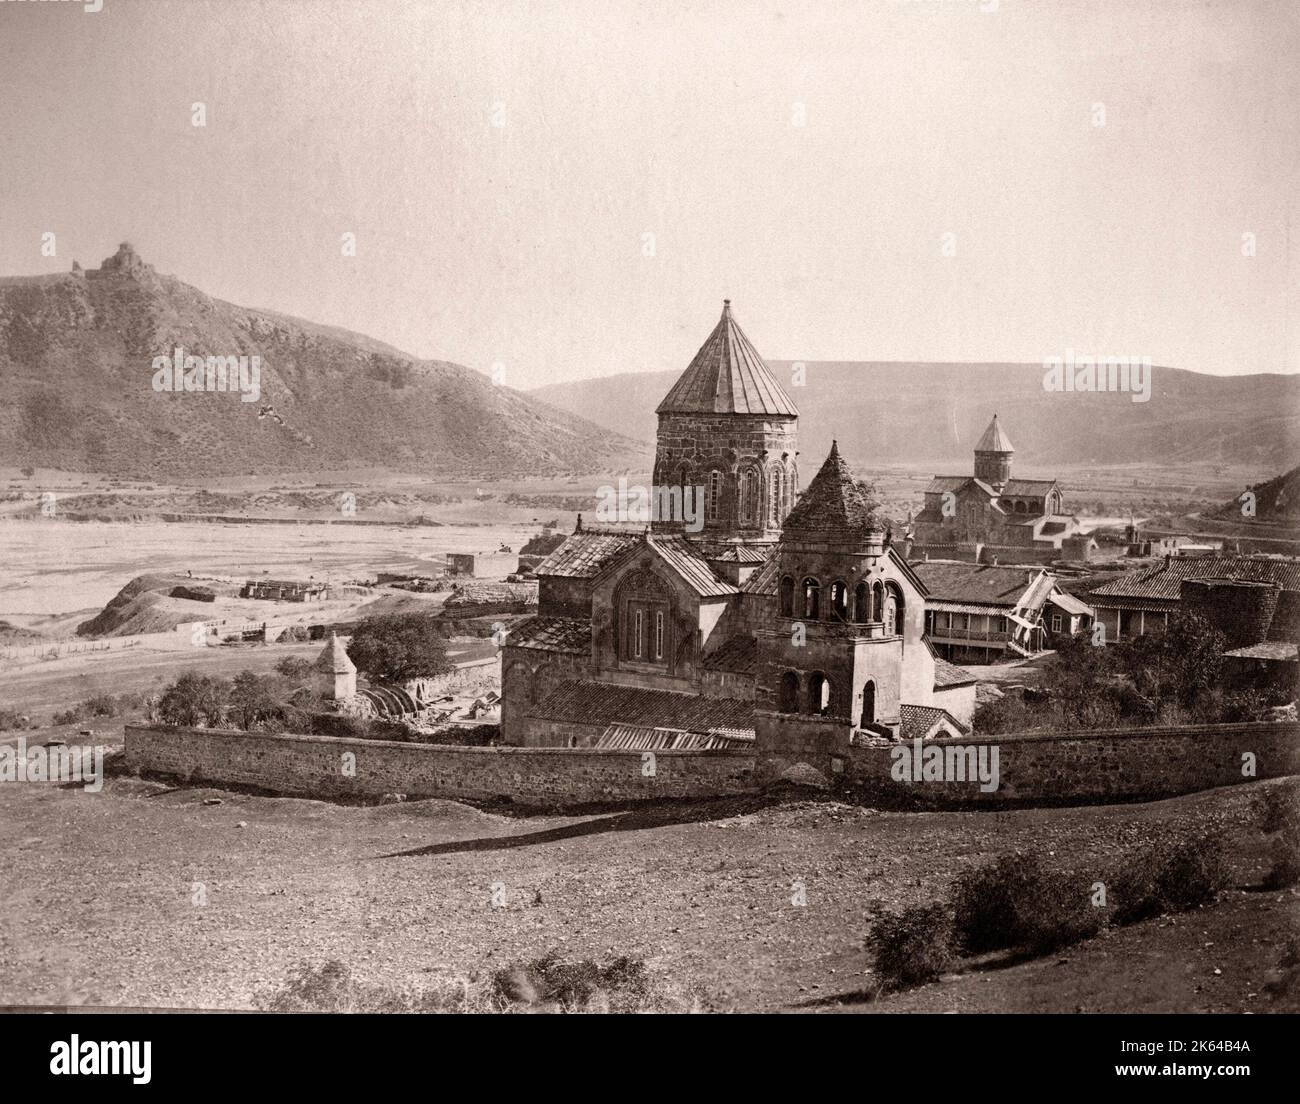 19e siècle vintage photo - Caucase Géorgie - églises et monastère à Mtskheta, ville dans la province de Mtskheta-Mtianeti Géorgie Banque D'Images